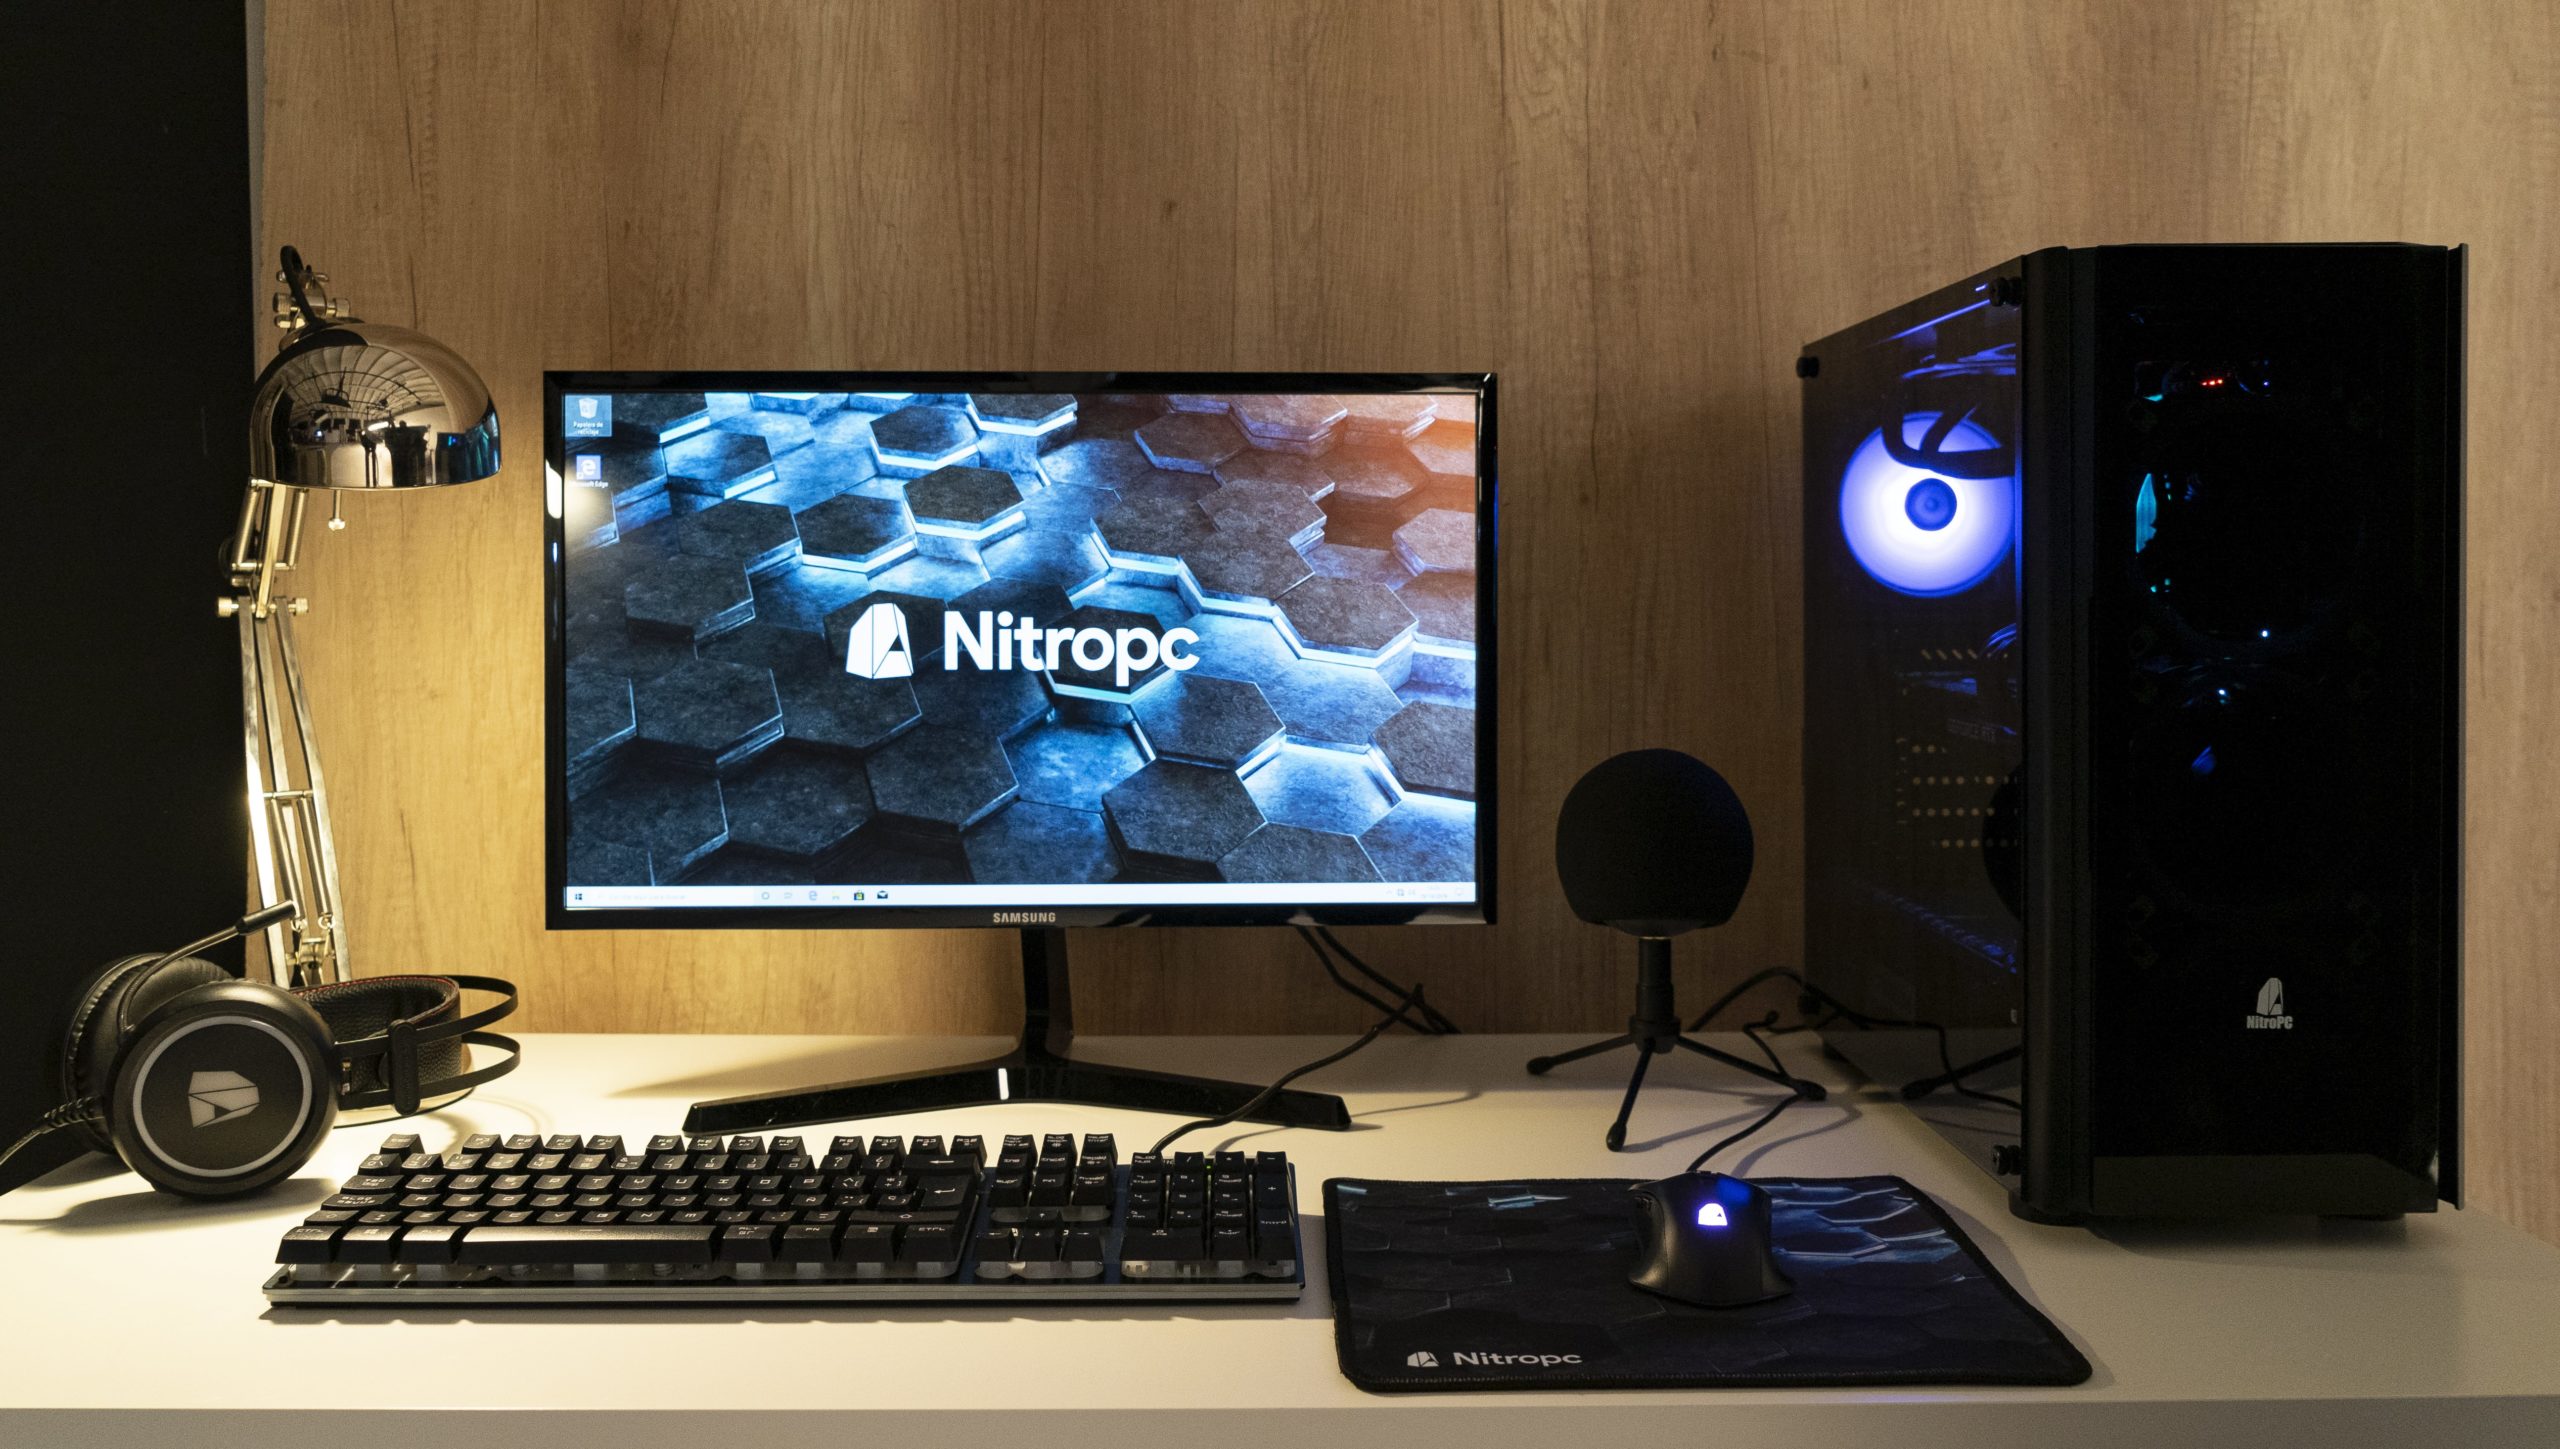 Nitropc ES - Descubre todas las novedades gamer en el blog de